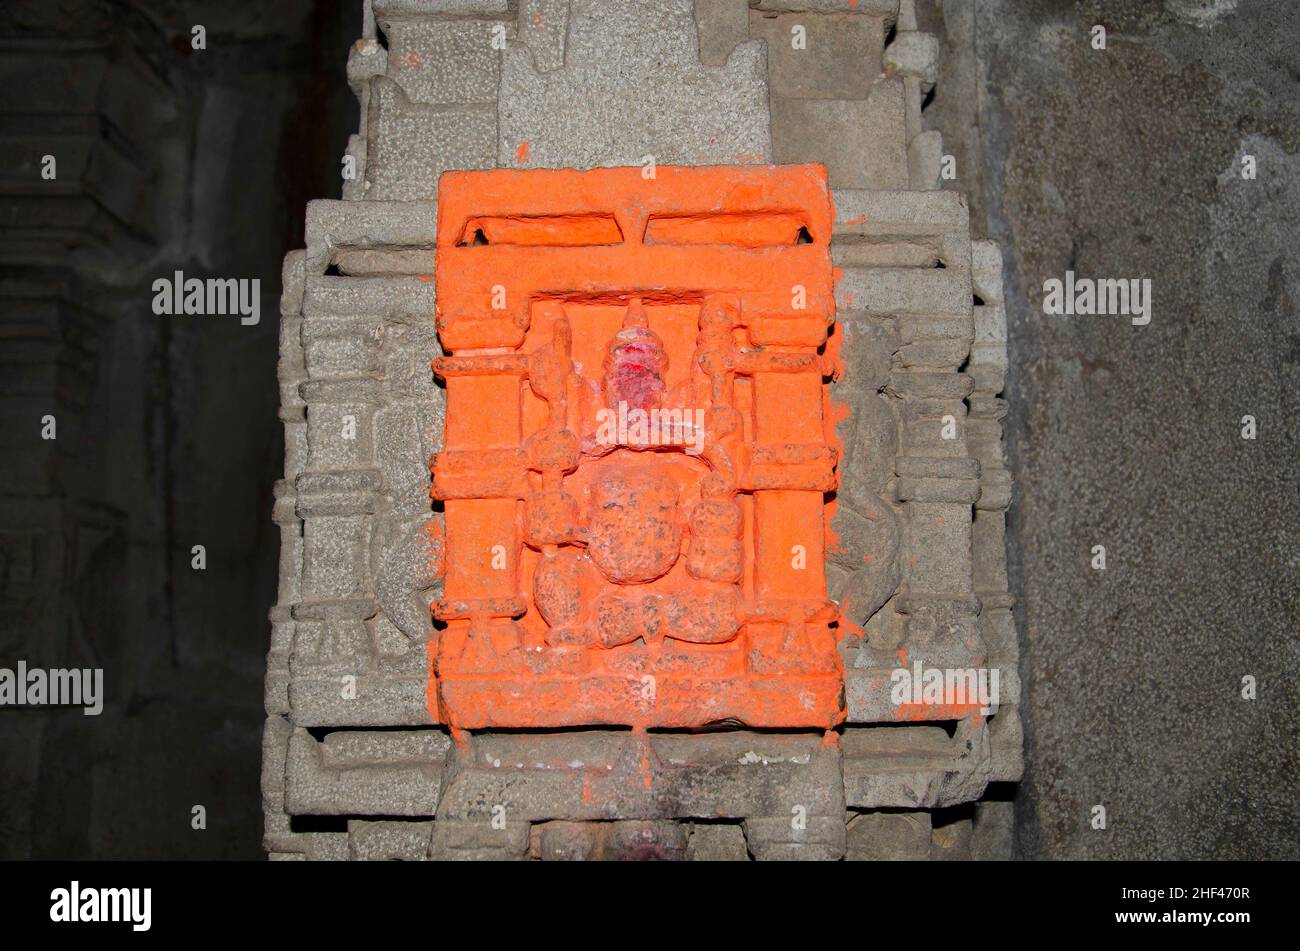 Ídolo tallado del Señor Ganapati en la pared interior del Templo de Kukdeshwar, dedicado al Señor Shiva, se encuentra en las orillas del río Kukdi, situado en Junnar, Foto de stock